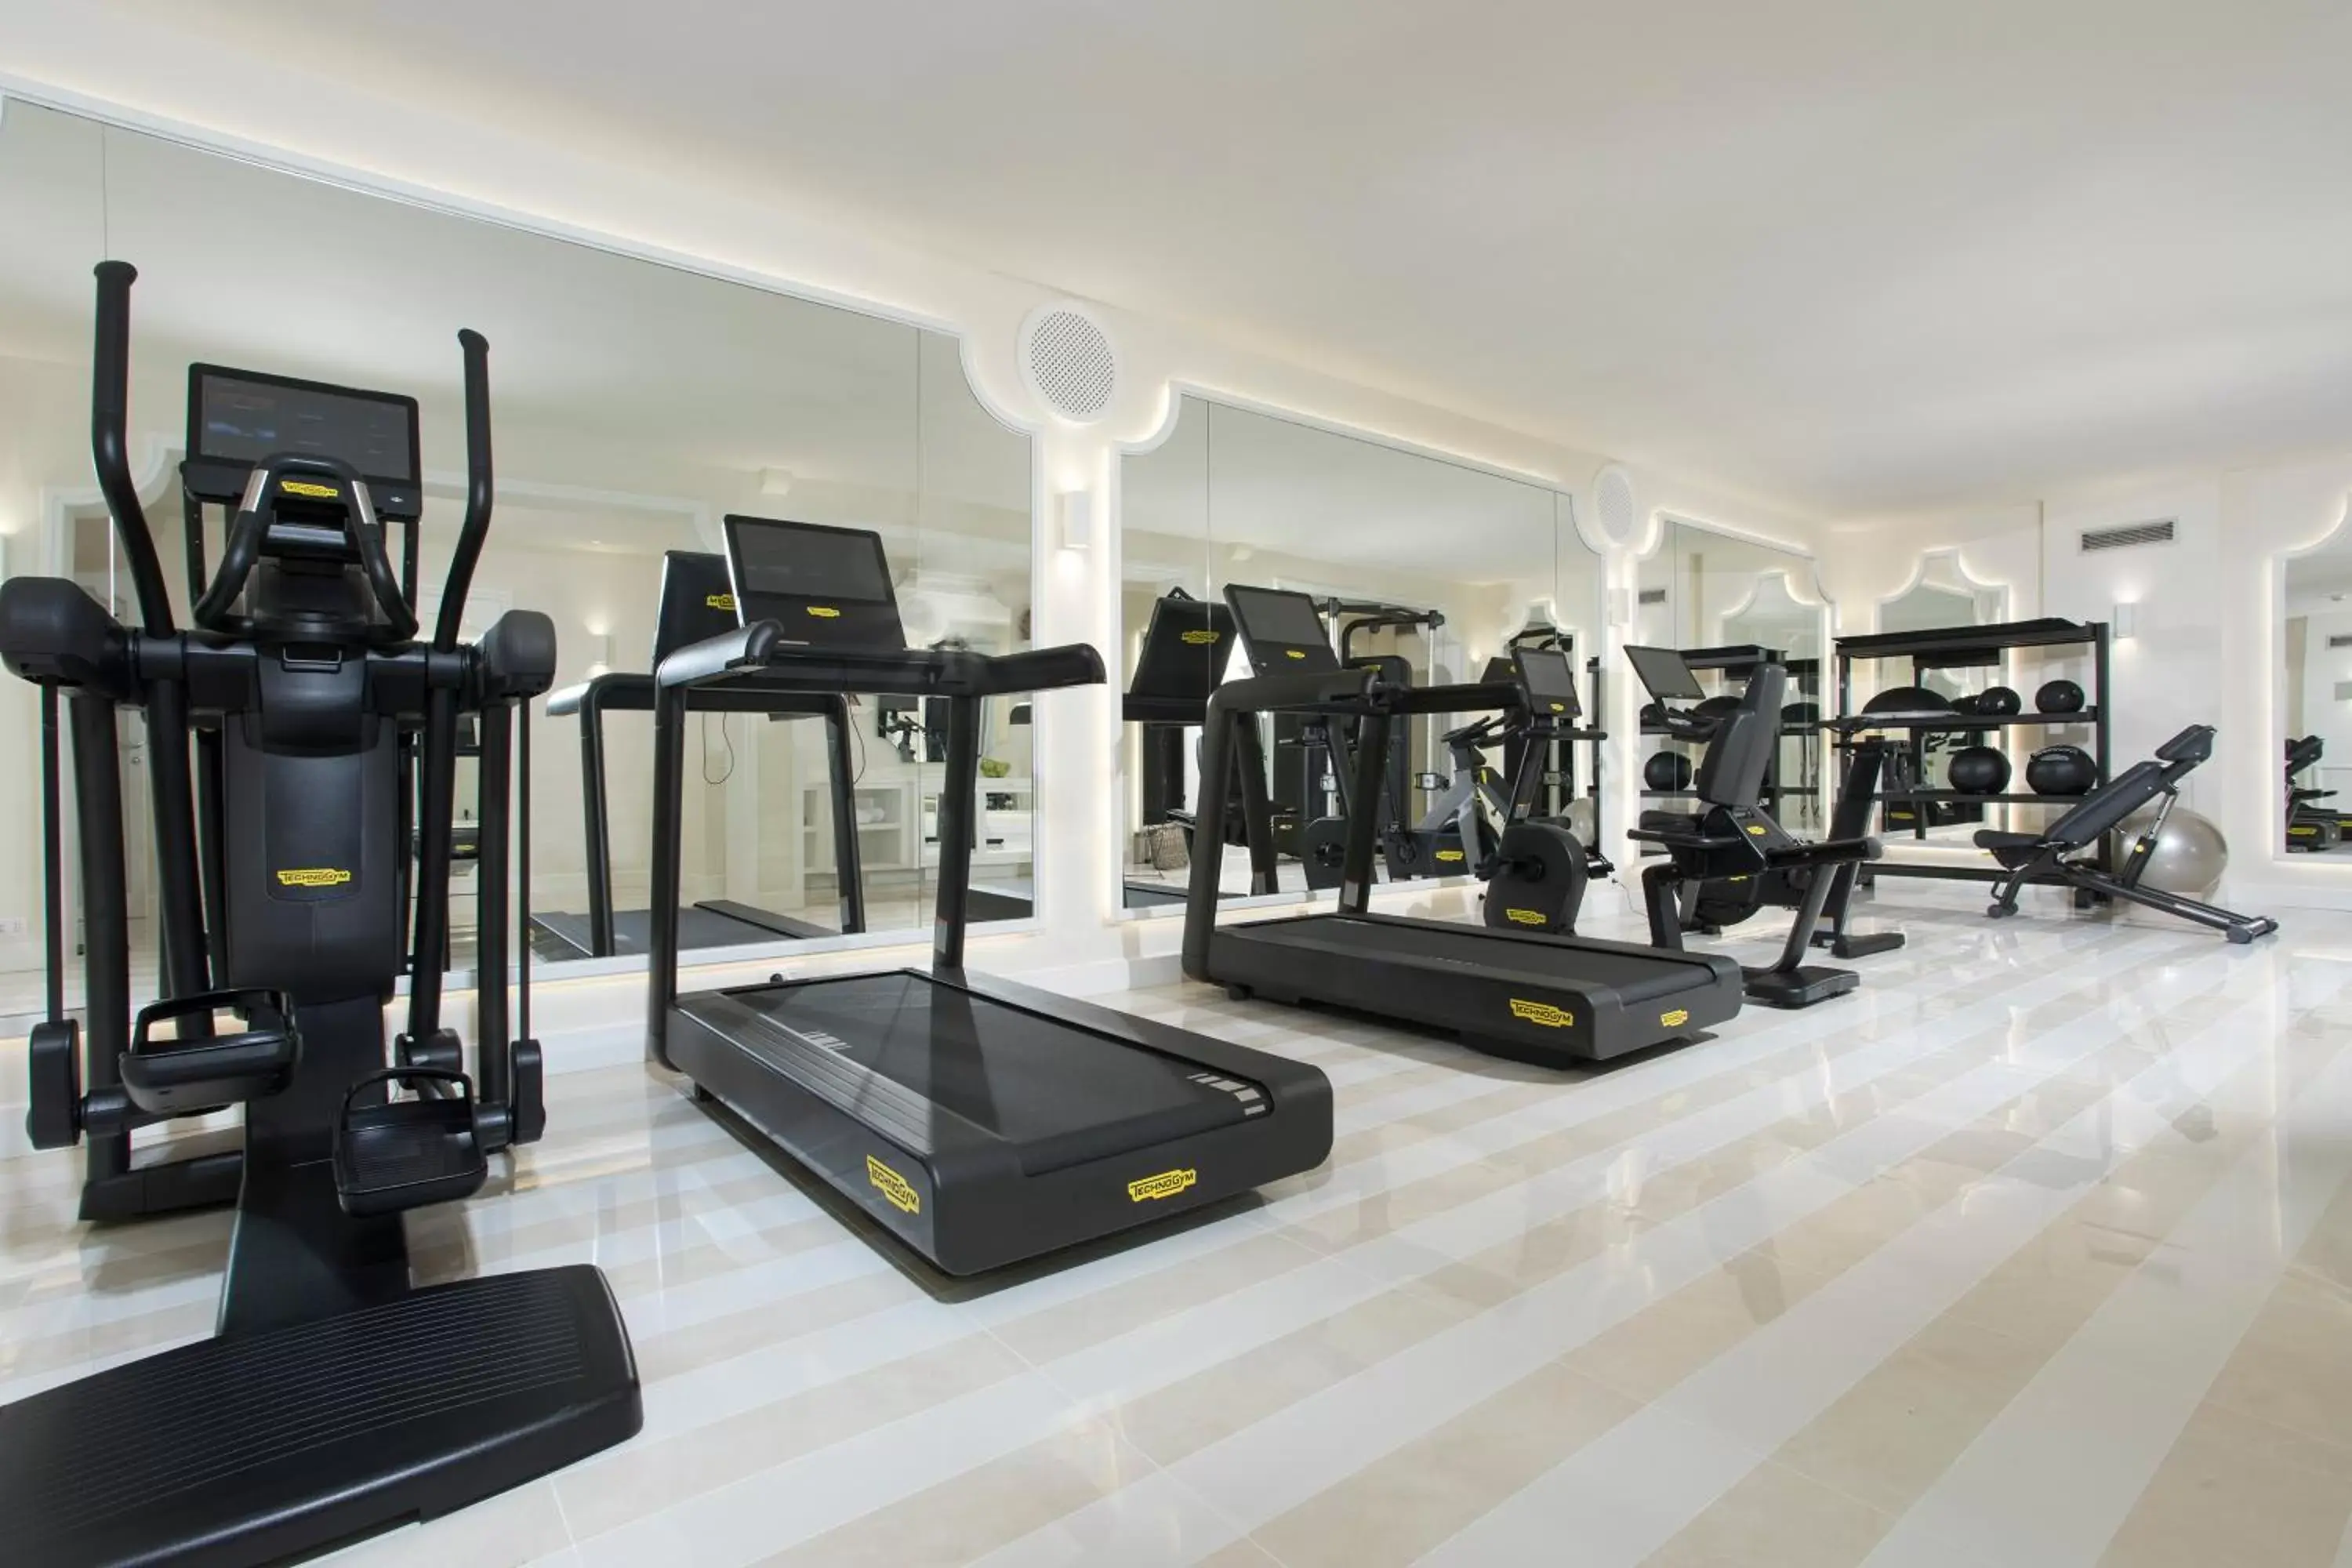 Fitness centre/facilities, Fitness Center/Facilities in Grand Hotel Capodimonte